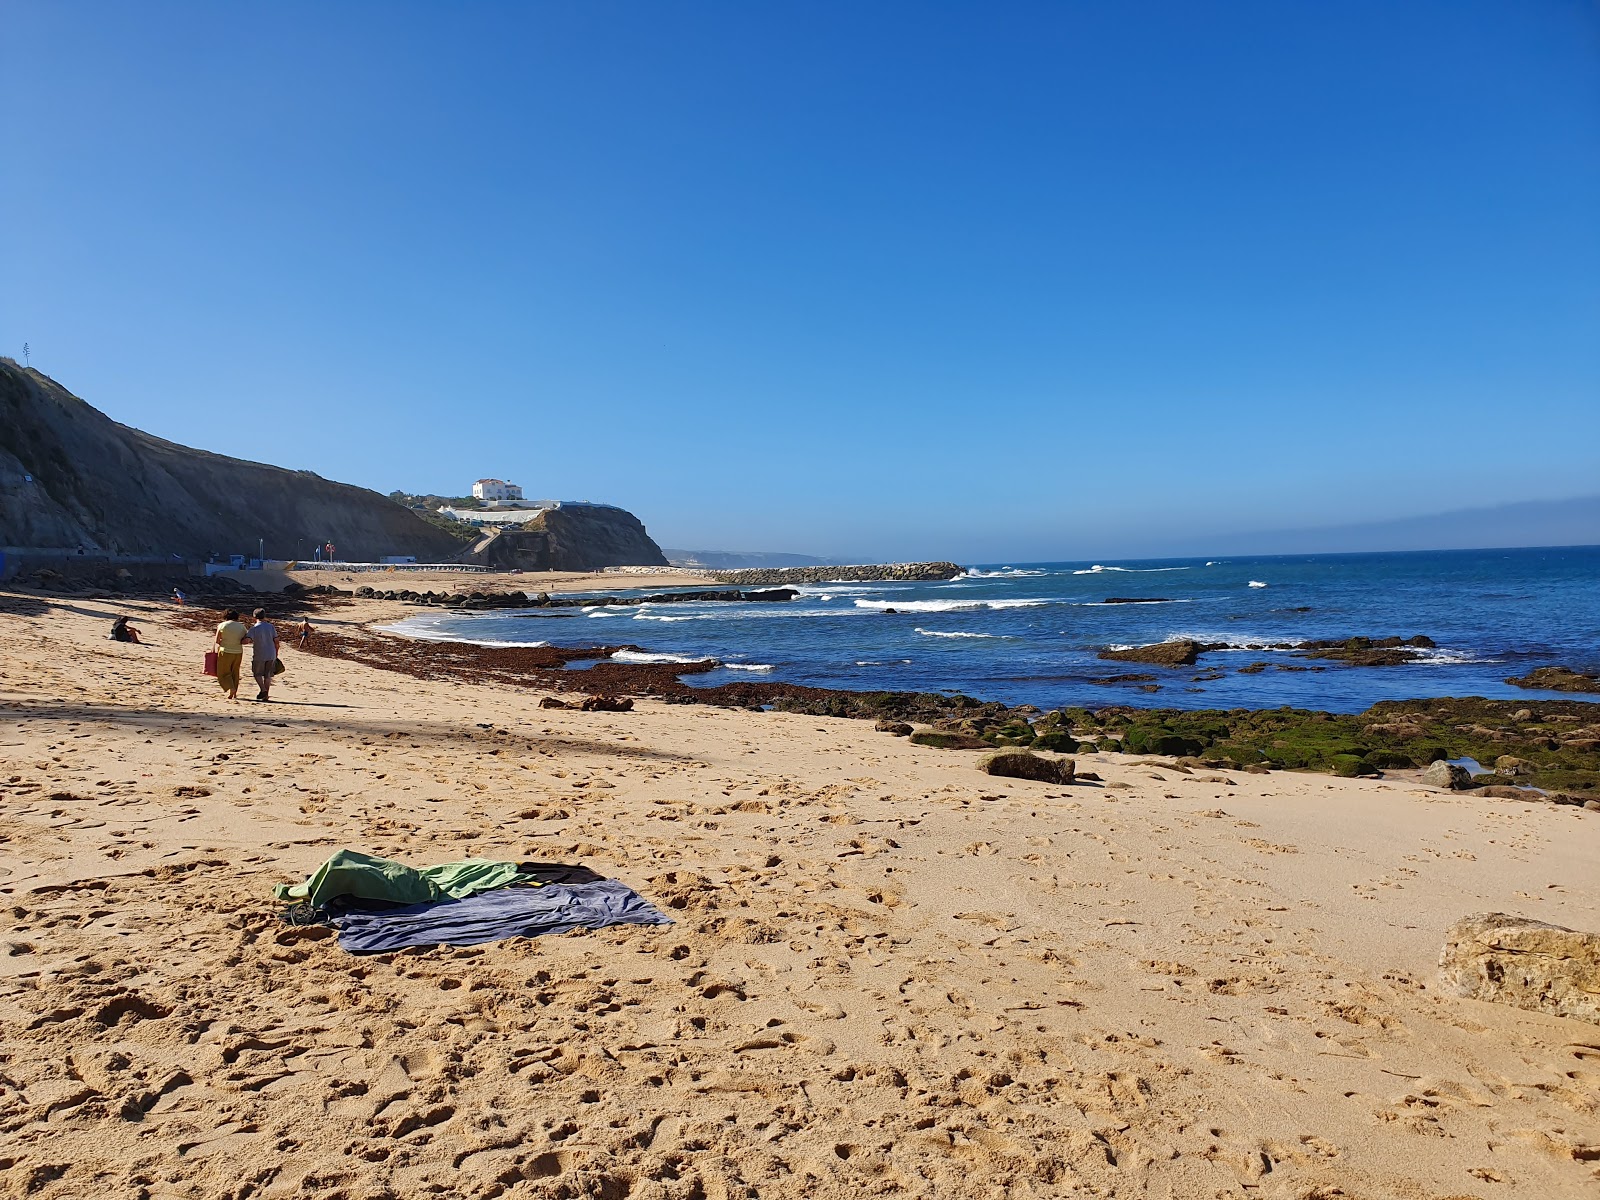 Praia da Baleia'in fotoğrafı geniş ile birlikte